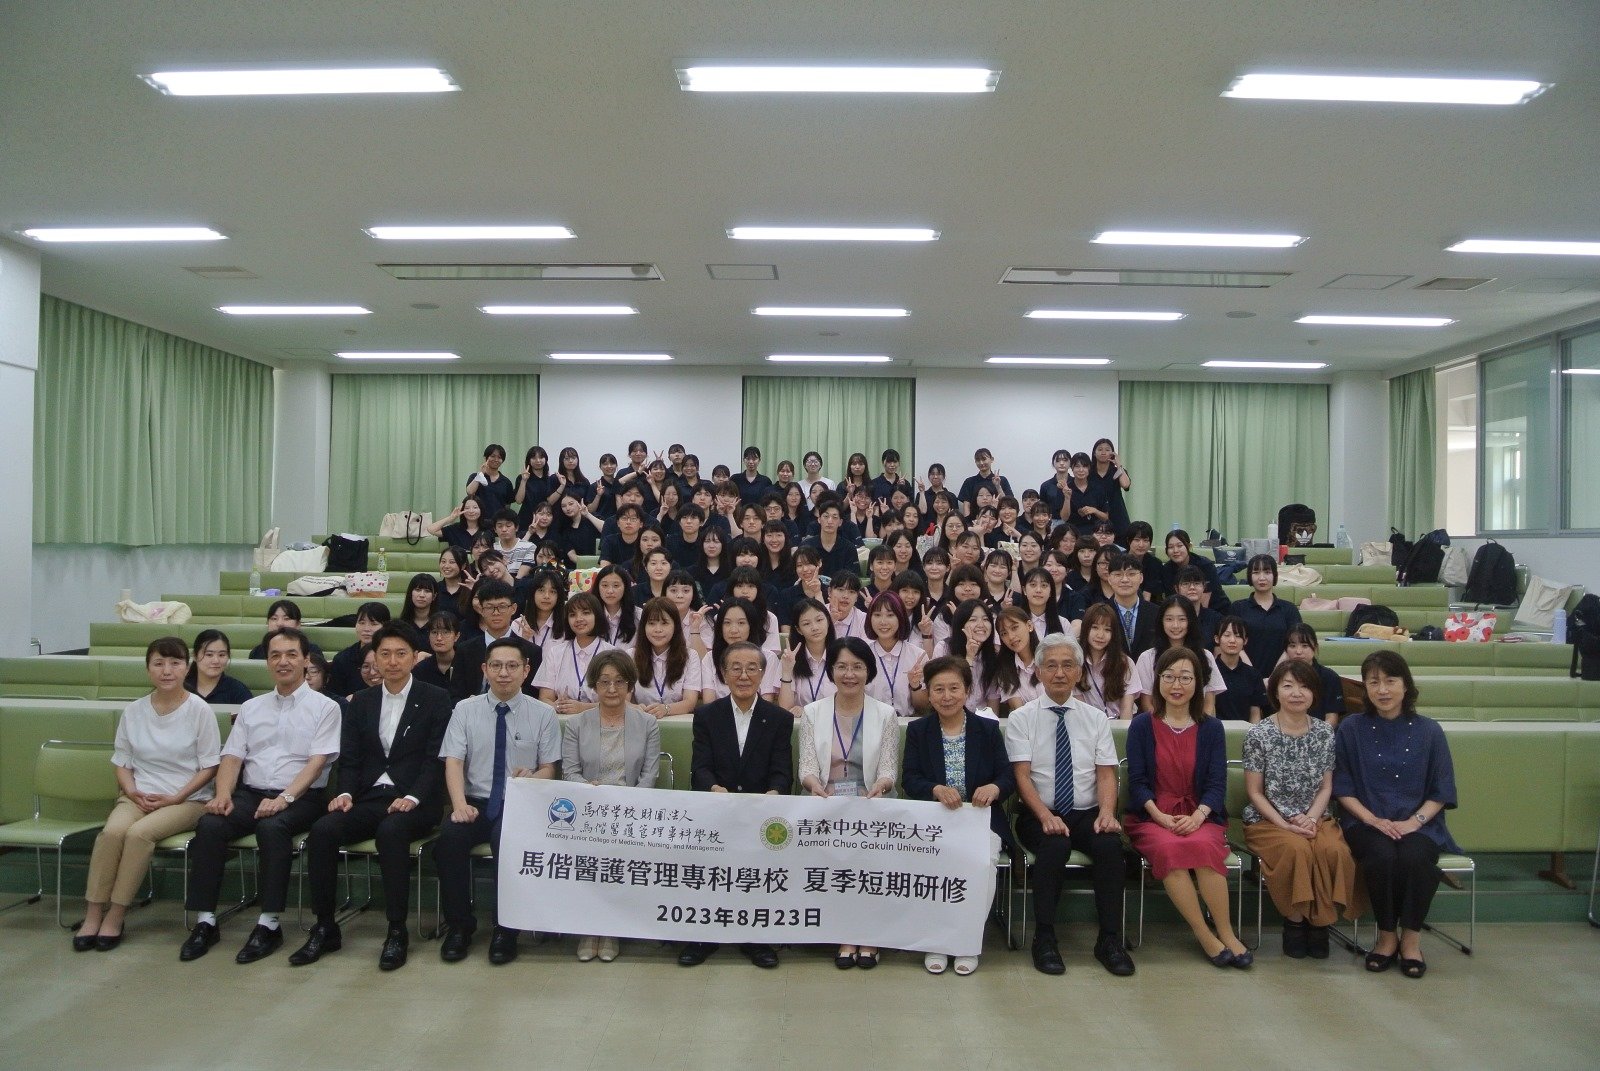 「馬偕医護管理専科学校（台湾）夏季短期研修」を実施しました